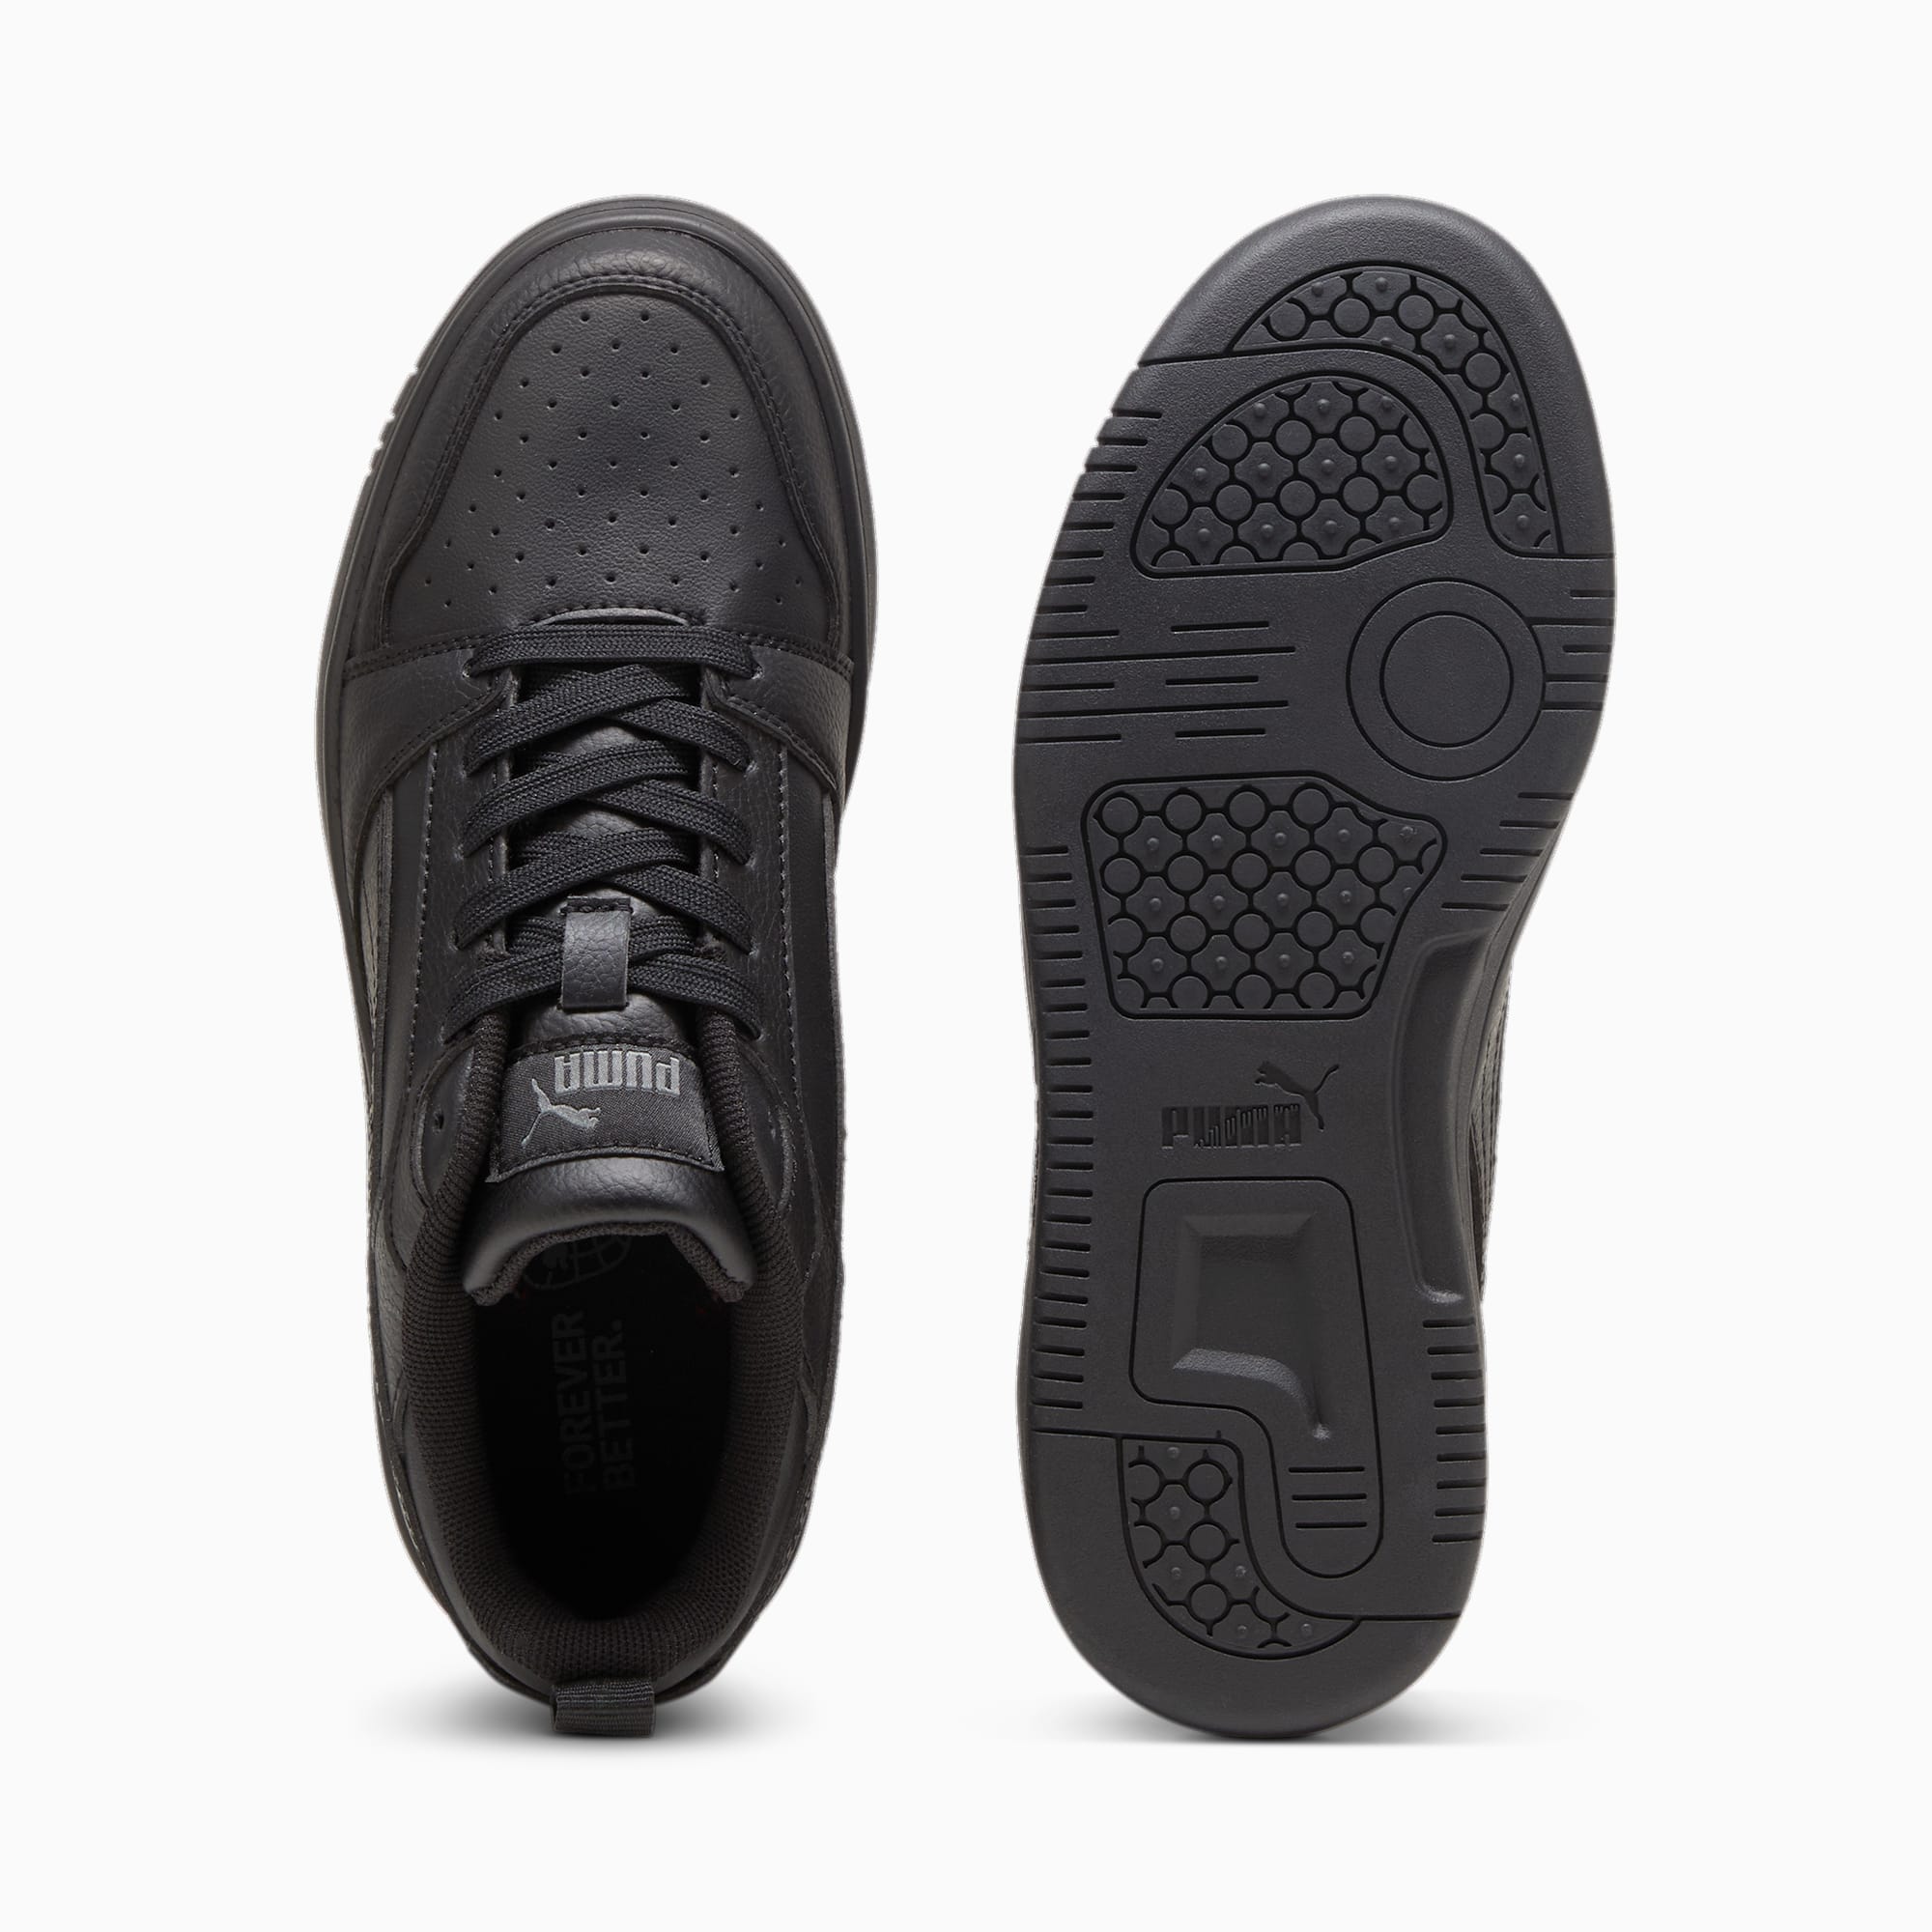 PUMA Młodzieżowe Sneakersy Rebound V6 Lo, Czarny / Szary